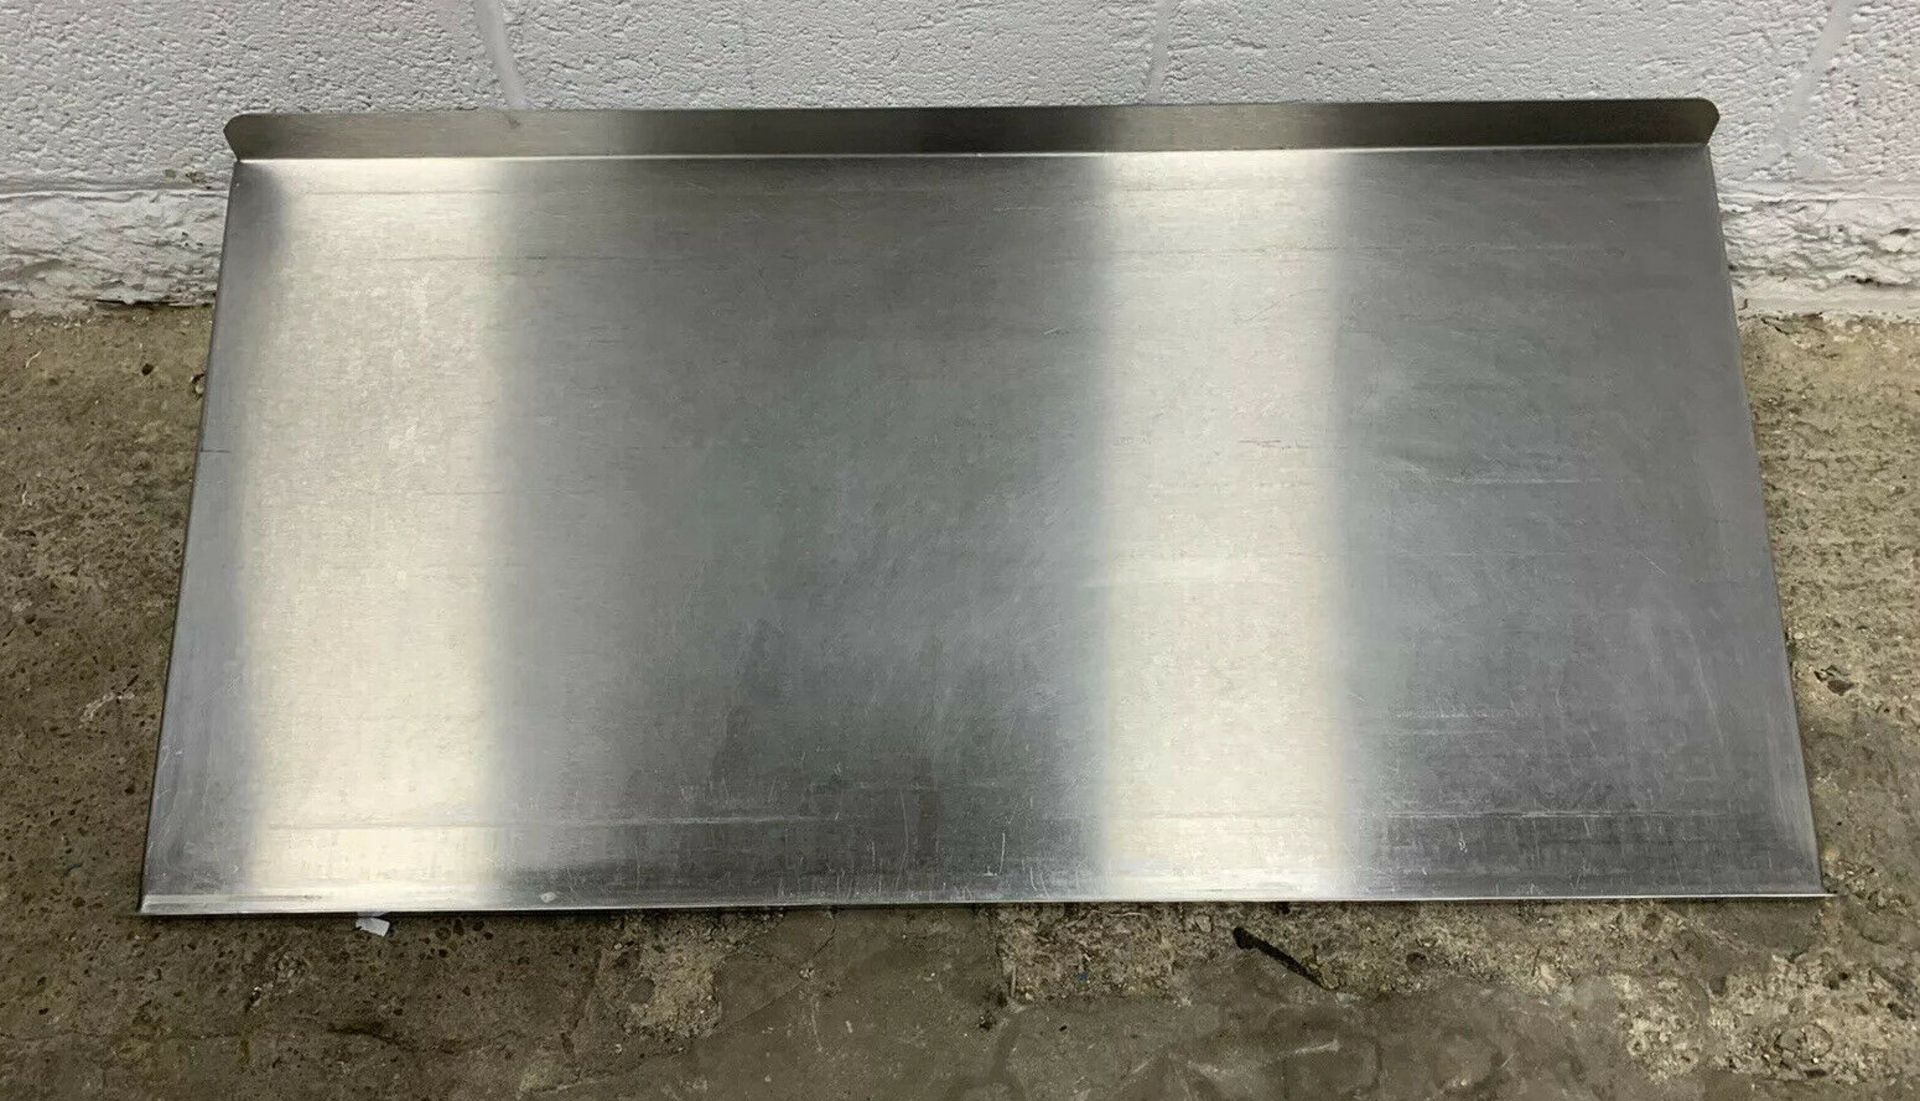 Steel Dishwasher Tray Shelf - Image 4 of 4